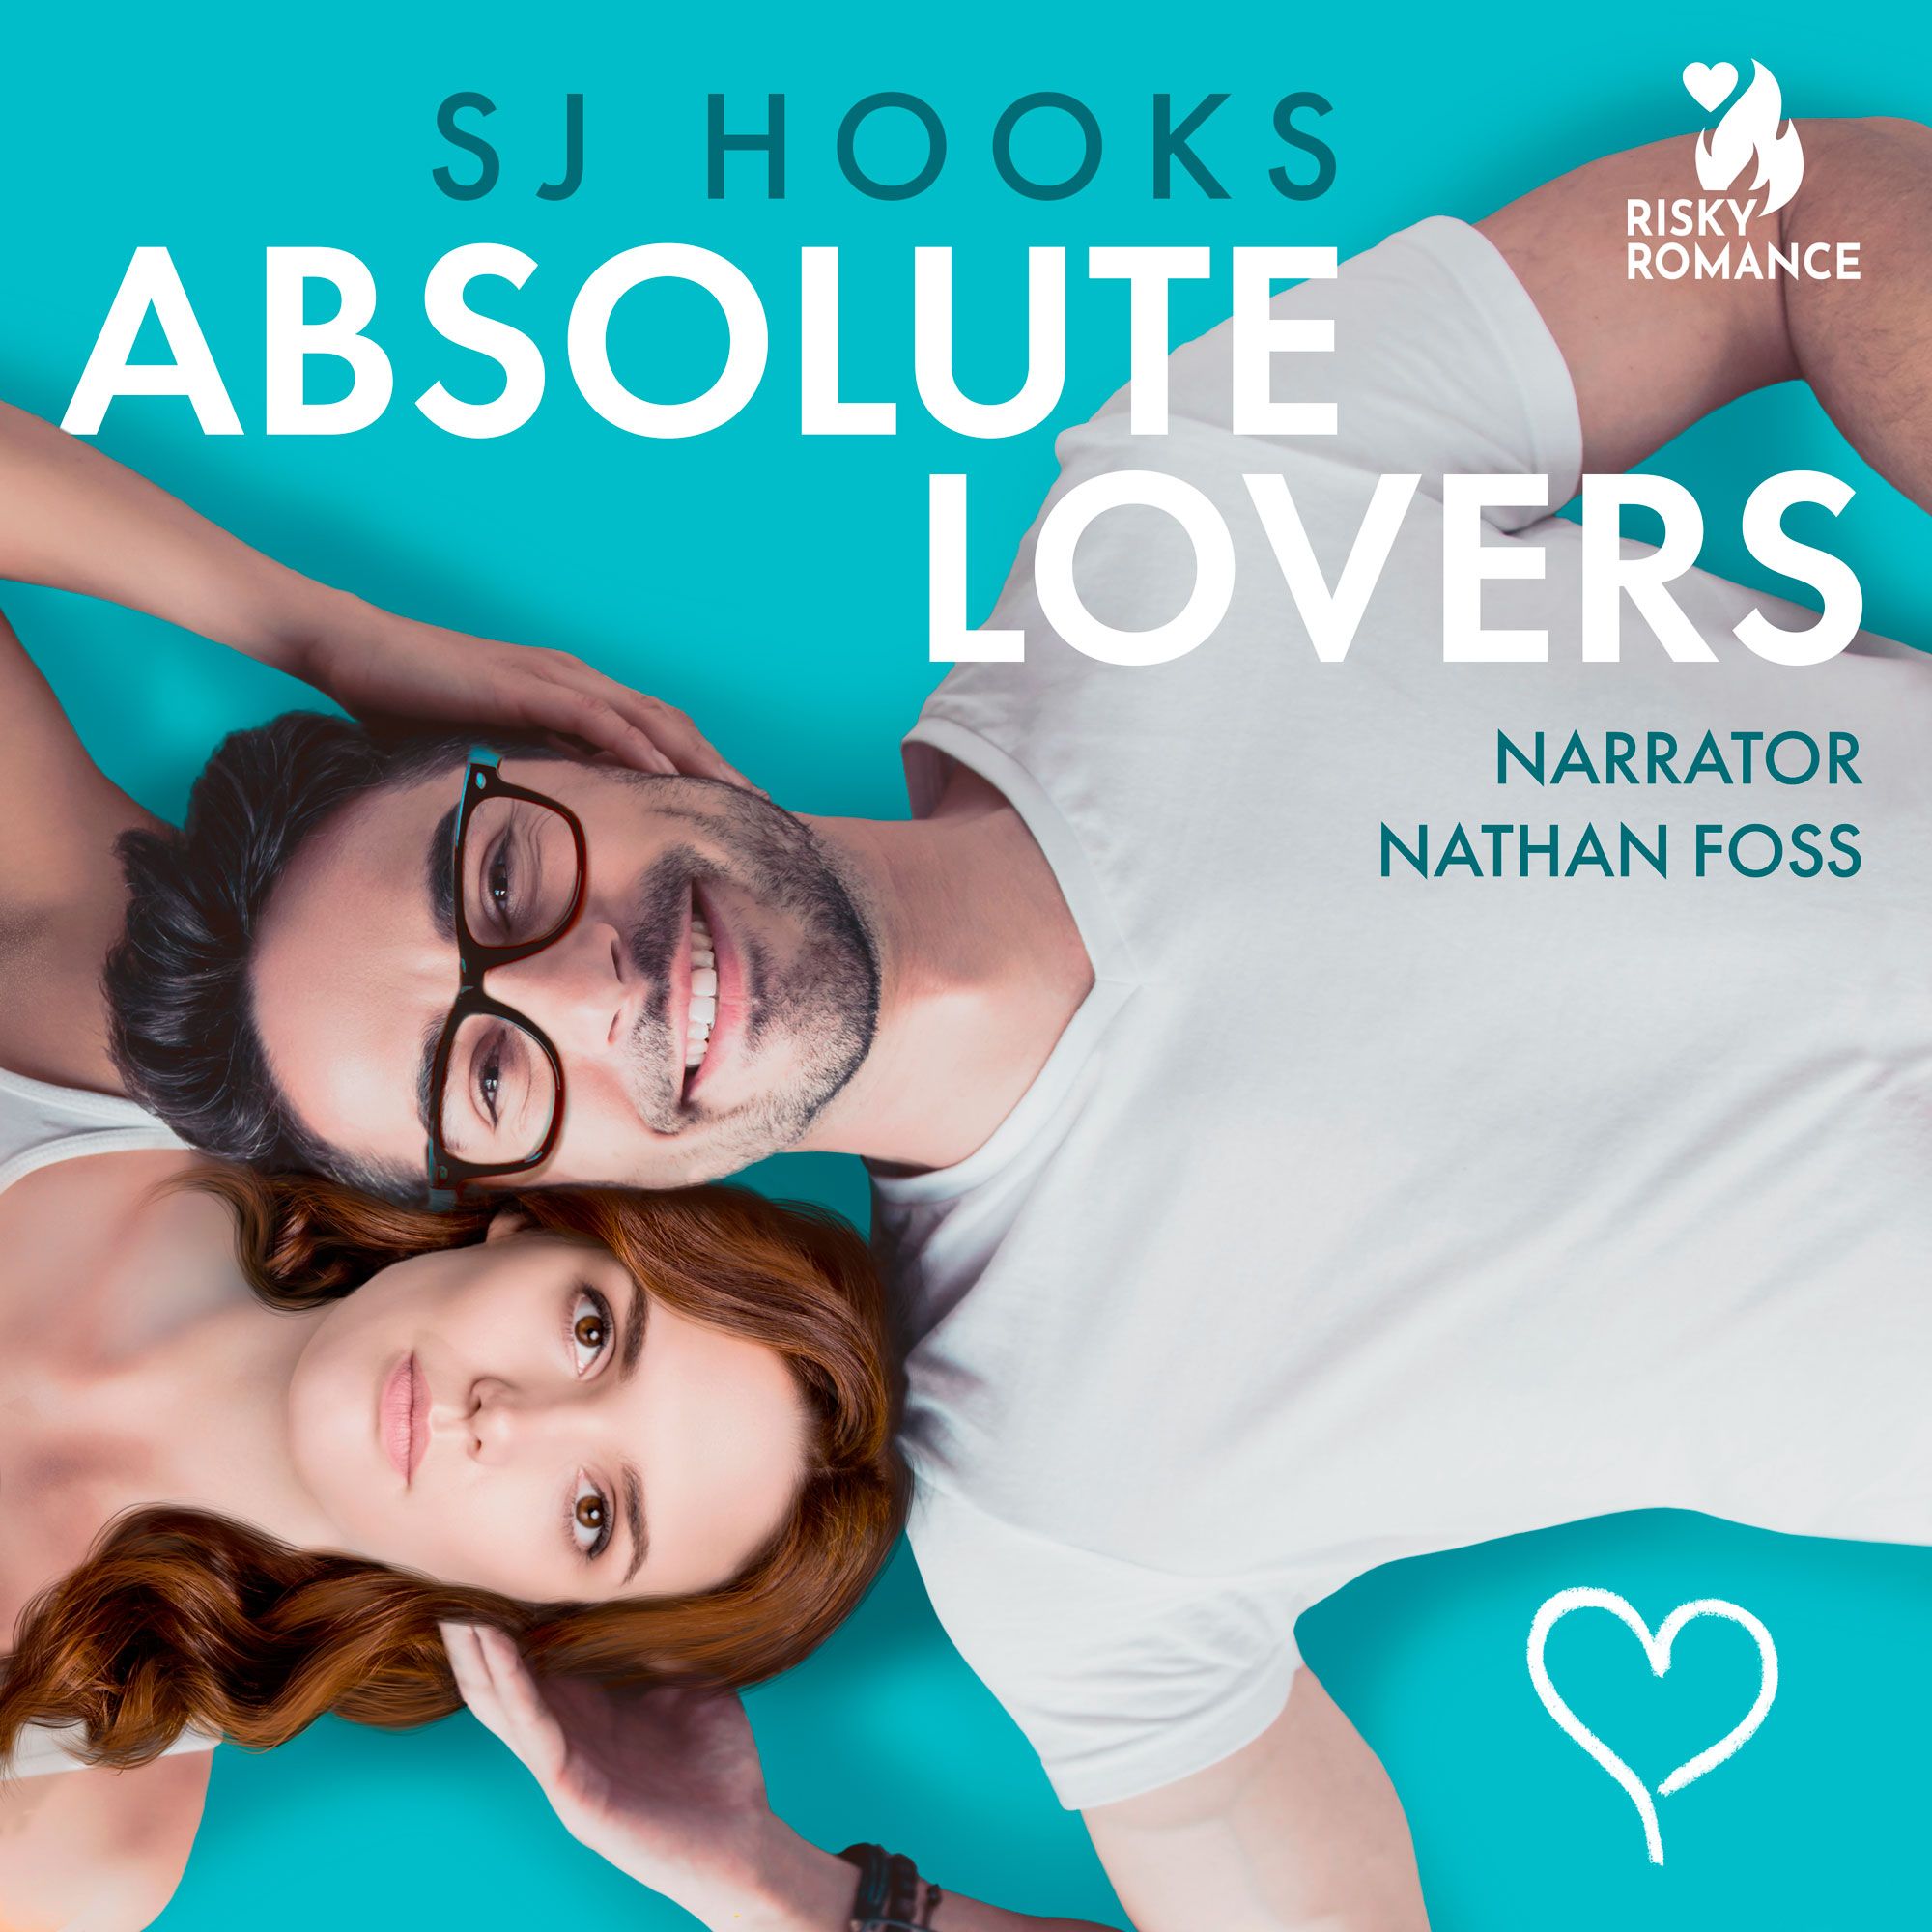 Absolute Lovers, lydbog af SJ Hooks